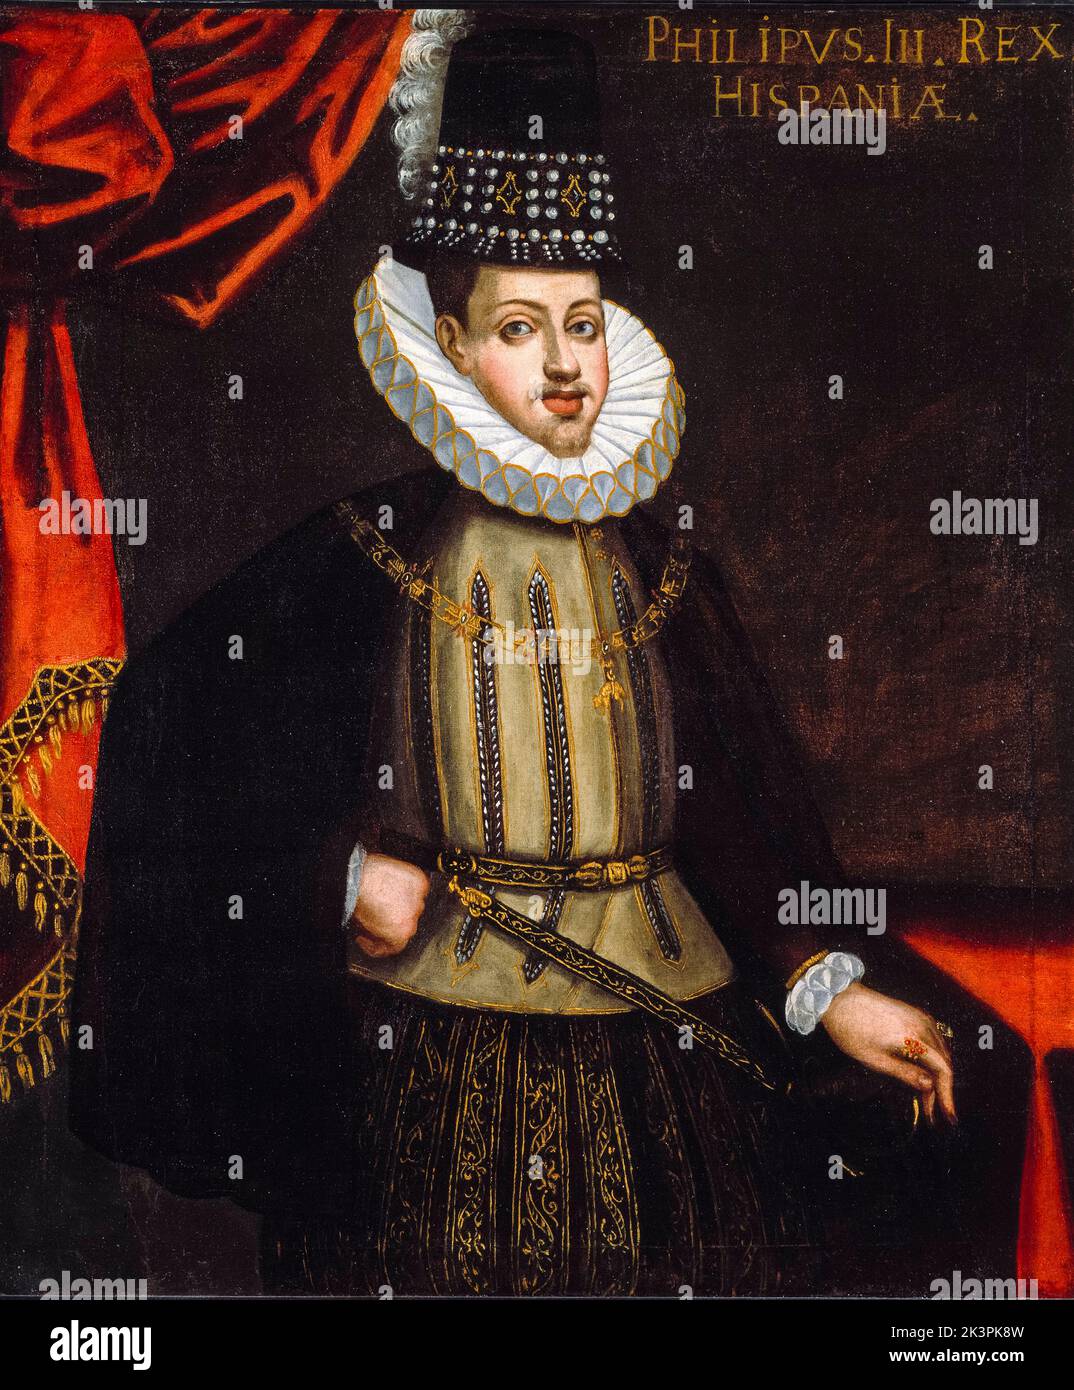 Philip III (1578-1621), roi d'Espagne, (1598-1621), portrait peint à l'huile sur toile par un artiste de l'Ecole d'Espagne, 1590-1600 Banque D'Images